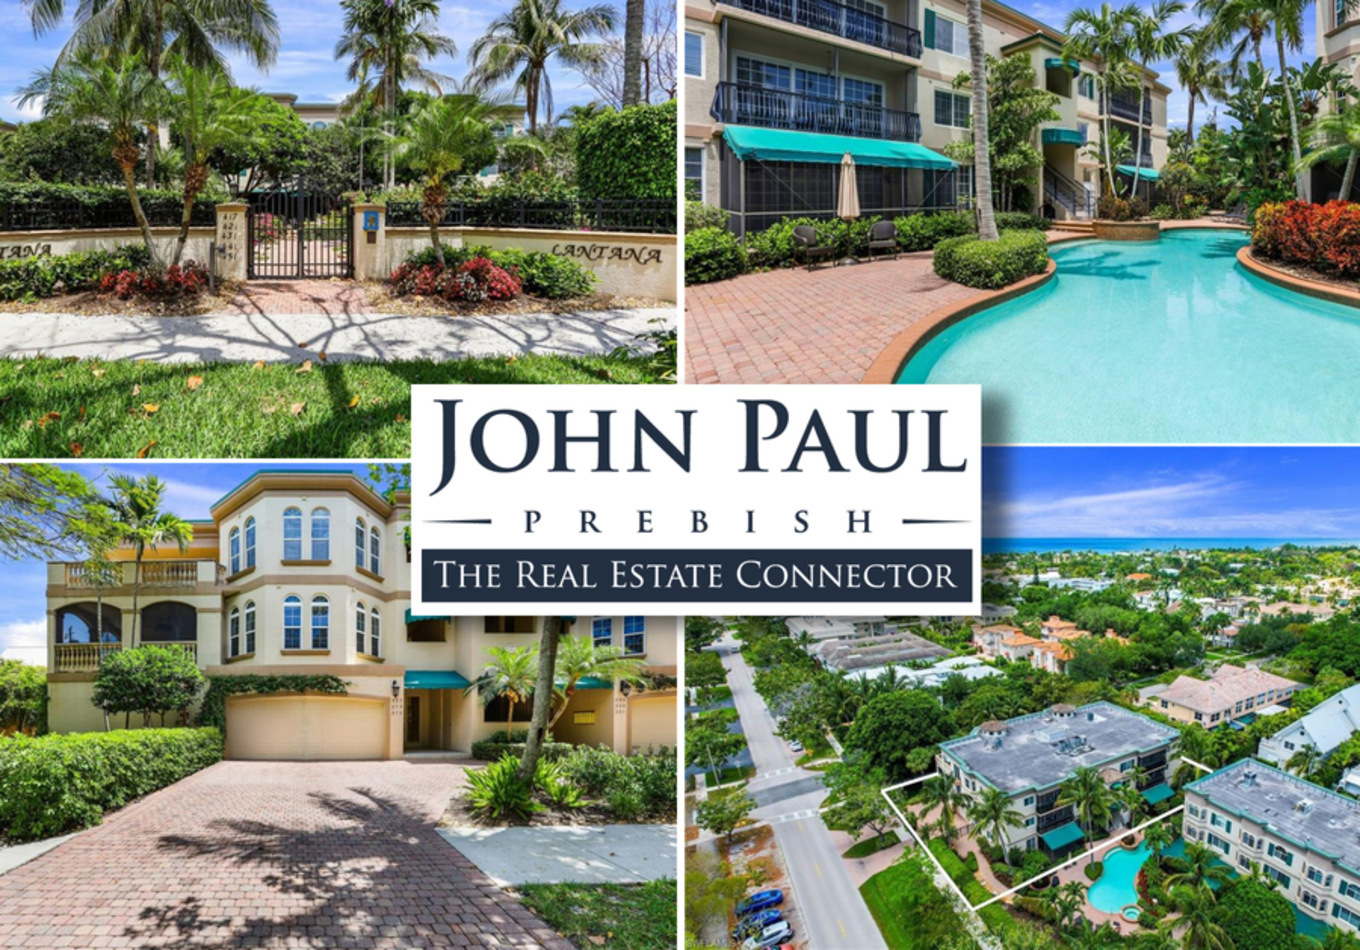 The Real Estate Connector - John Paul Prebish, PA , Monday, June 21, 2021, Press release picture